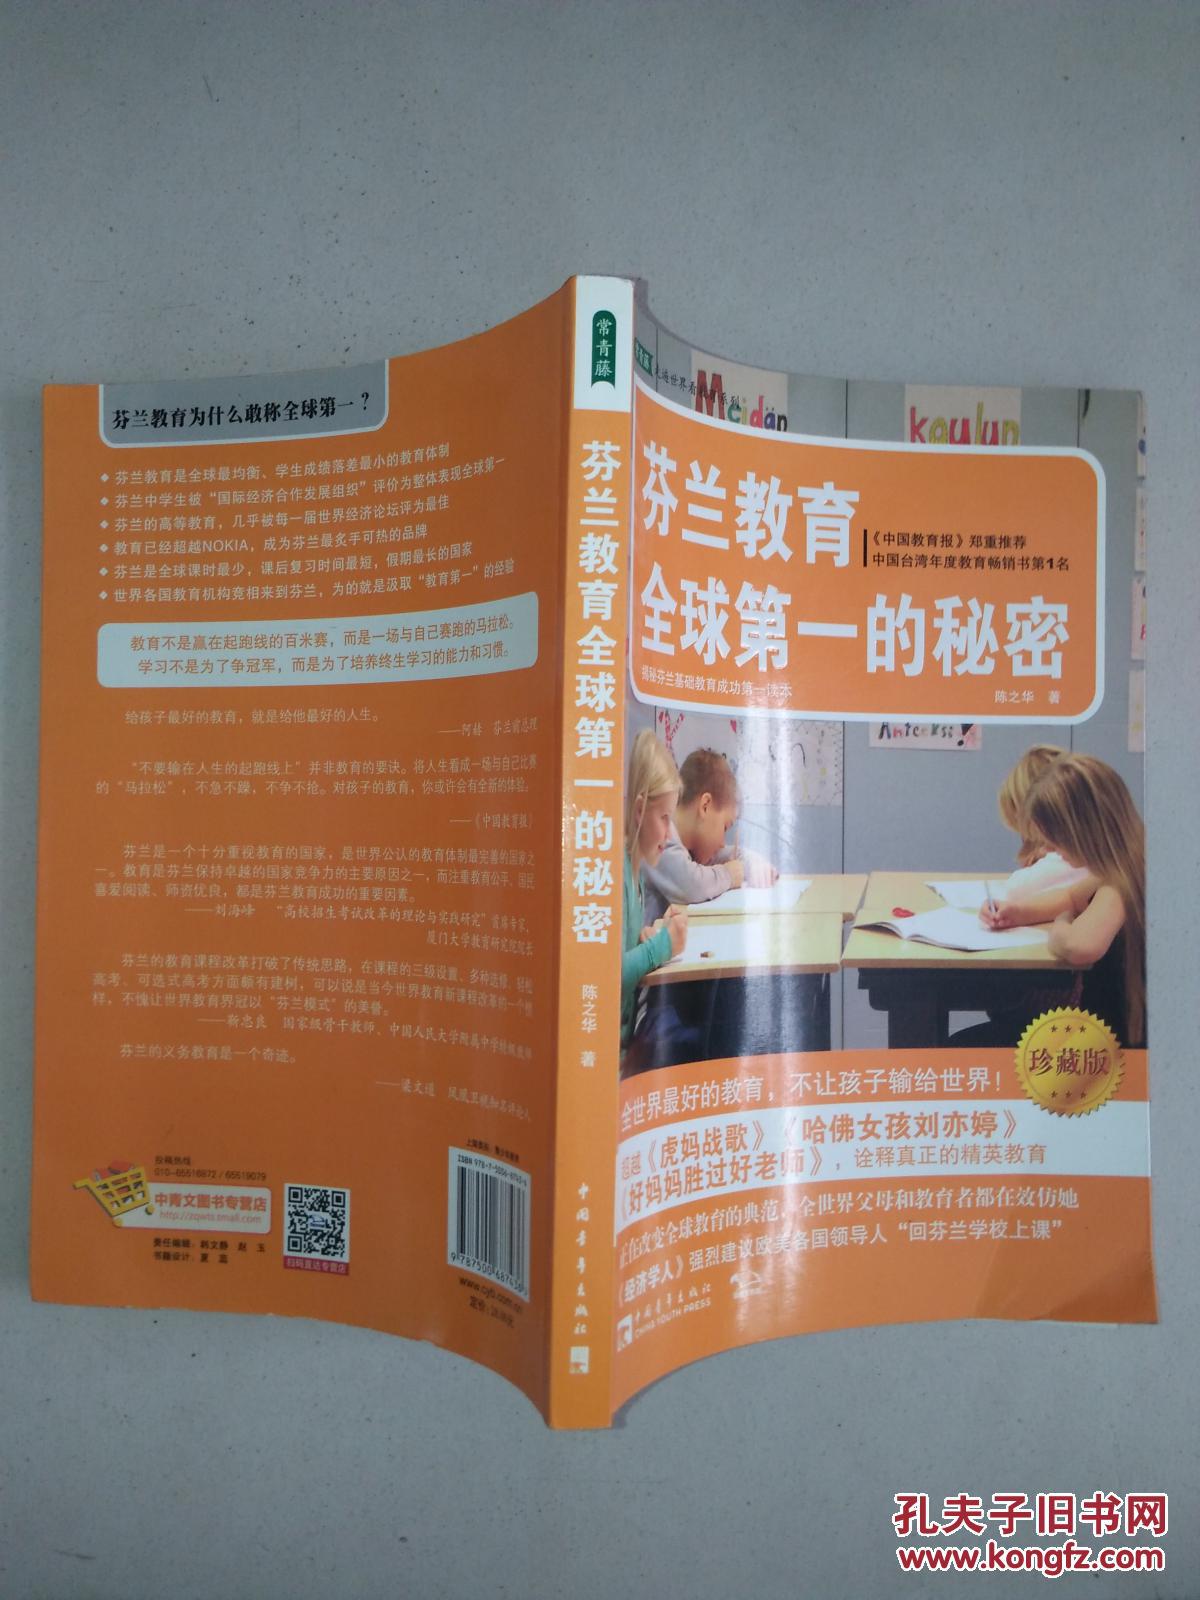 【图】芬兰教育全球第一的秘密_中国青年出版